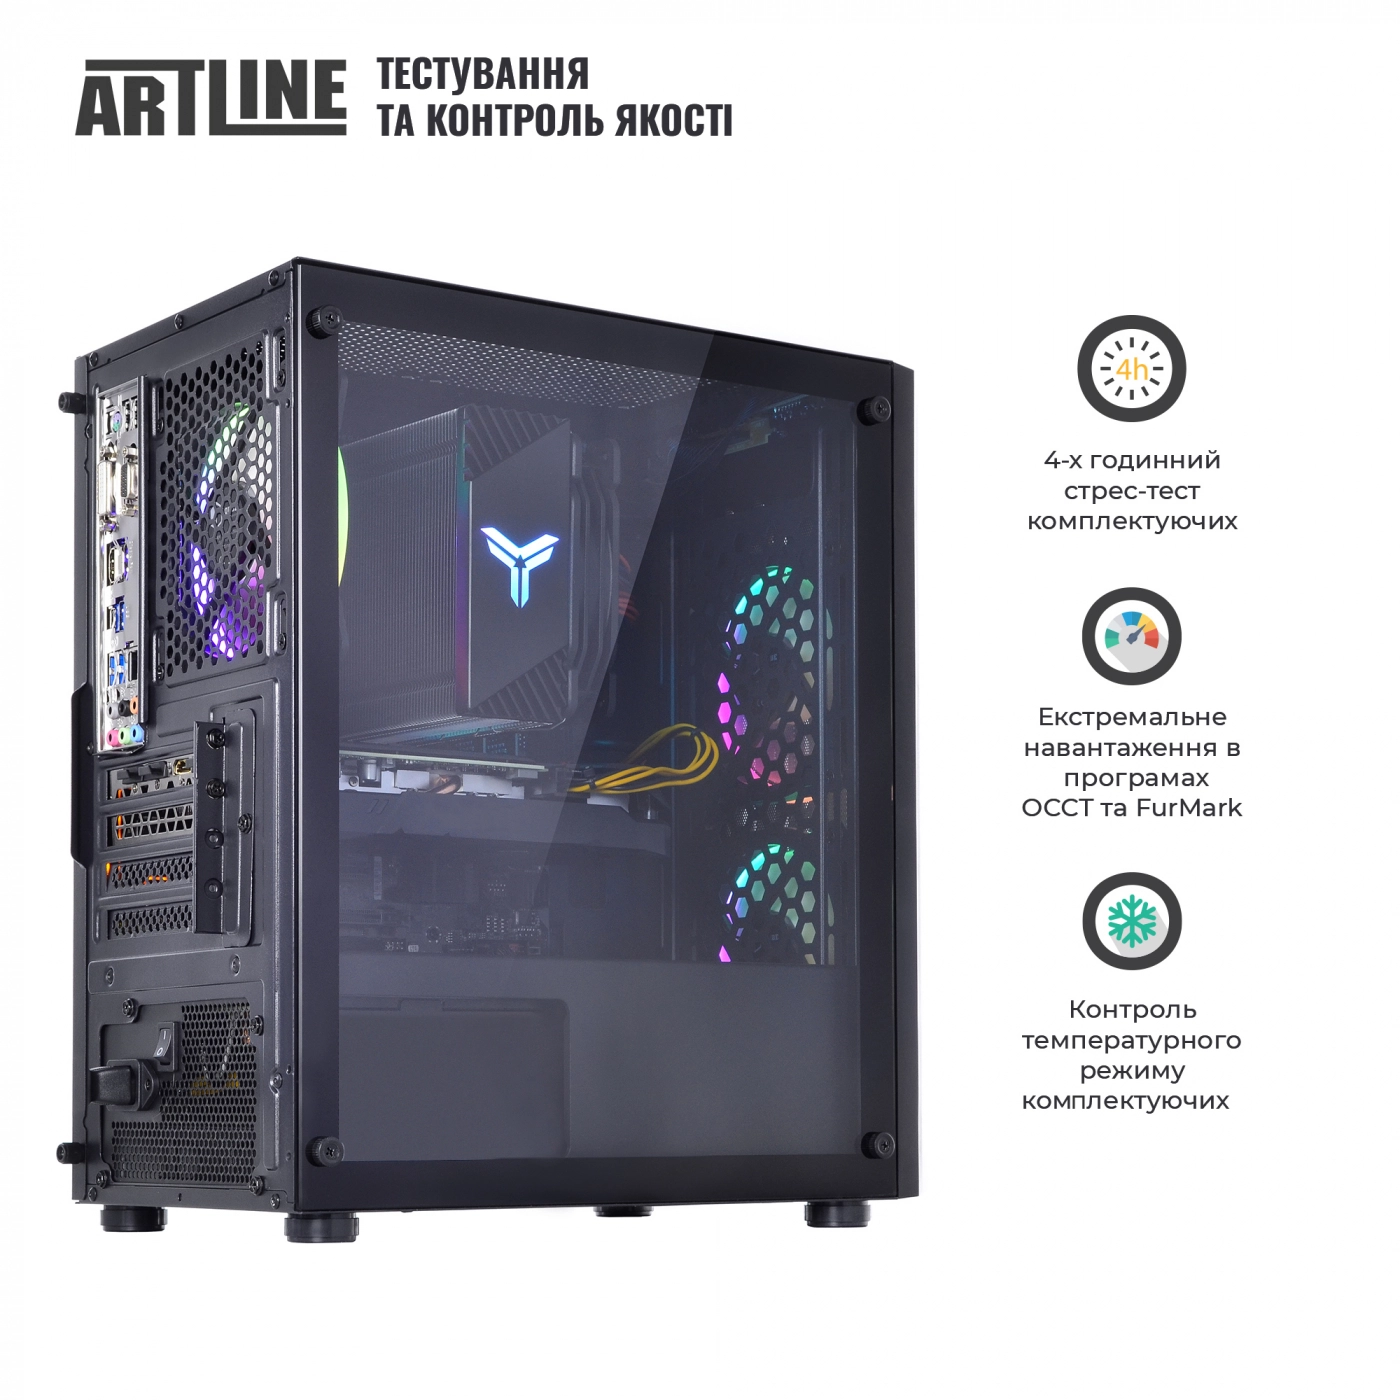 Купить Компьютер ARTLINE Gaming X71v51 - фото 9